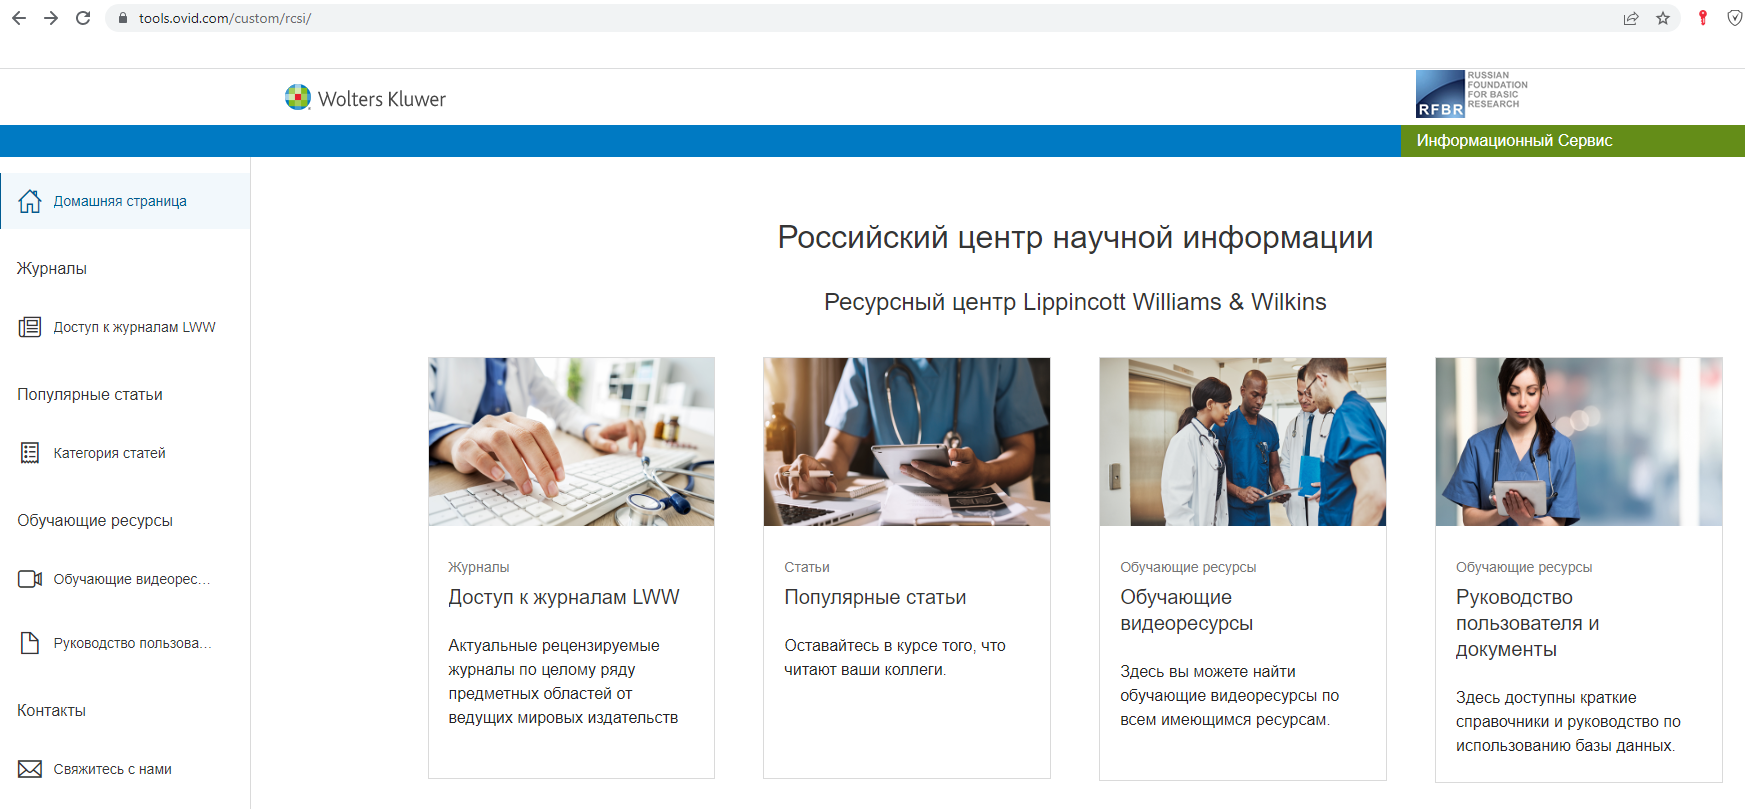 Открылся ресурсный центр OVID Technologies на русском языке